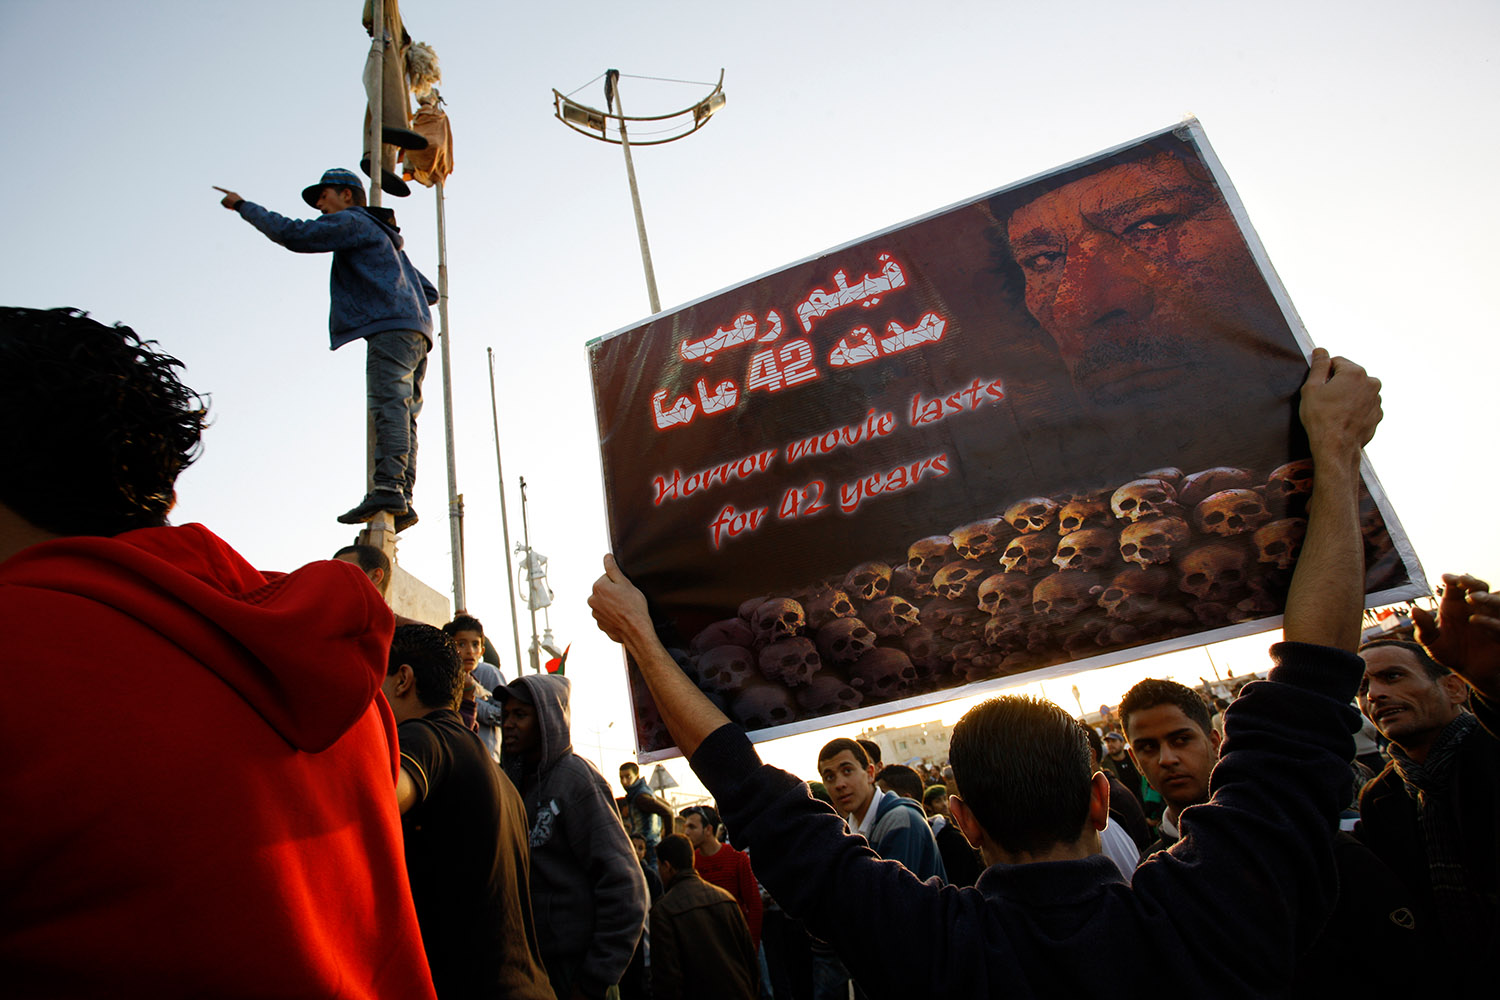 A Benghazi, un manifestant présente le régime de Kadhafi comme un « film d'horreur qui dure depuis 42 ans ». Parmi la foule sa pancarte représente des têtes de mort et le visage de Kadhafi.